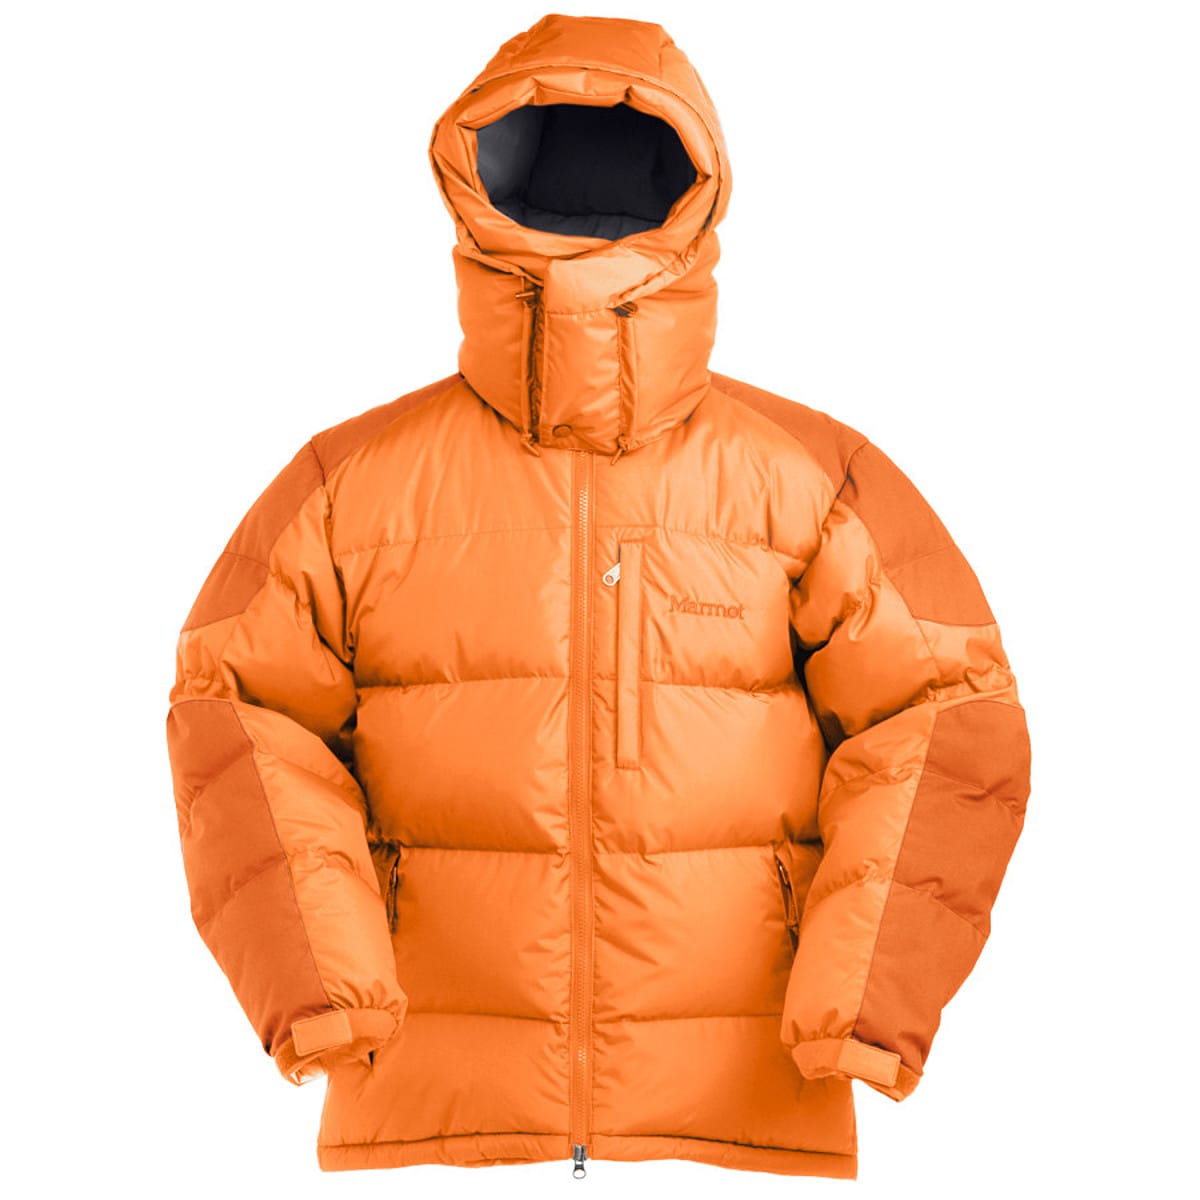 Marmot Mountain Down Jacket - Men's - Clothing